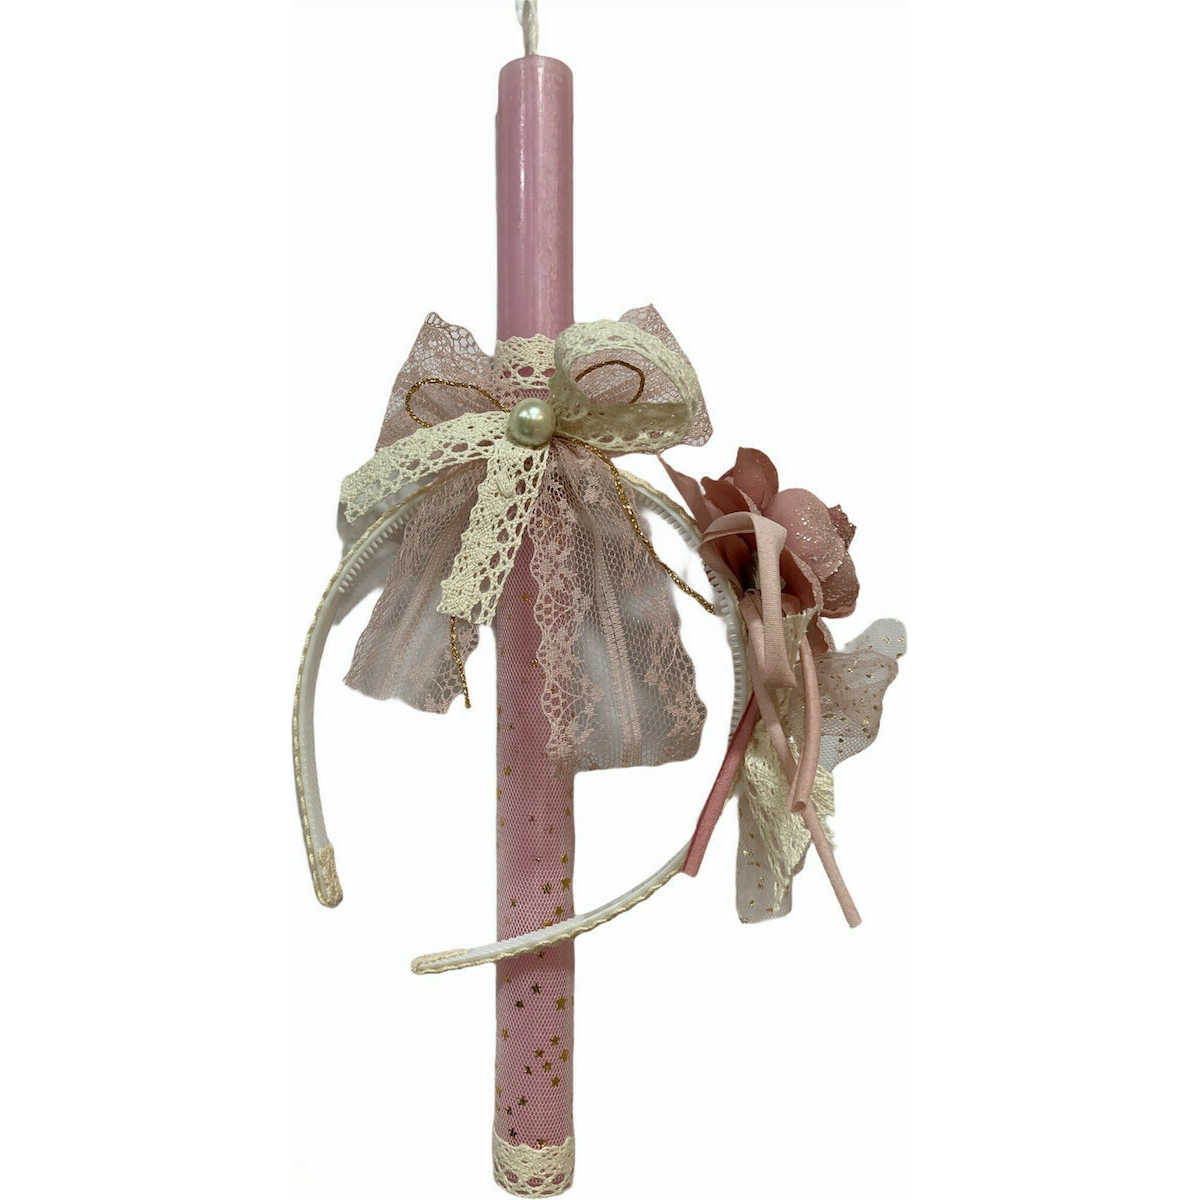 Χειροποίητη λαμπάδα 2022 για κορίτσι με στέκα για μαλλιά σε ροζ αρωματικό κερί.  Ύψος κεριού 30 εκ.Αποστέλλεται σε συσκευασία δώρου.